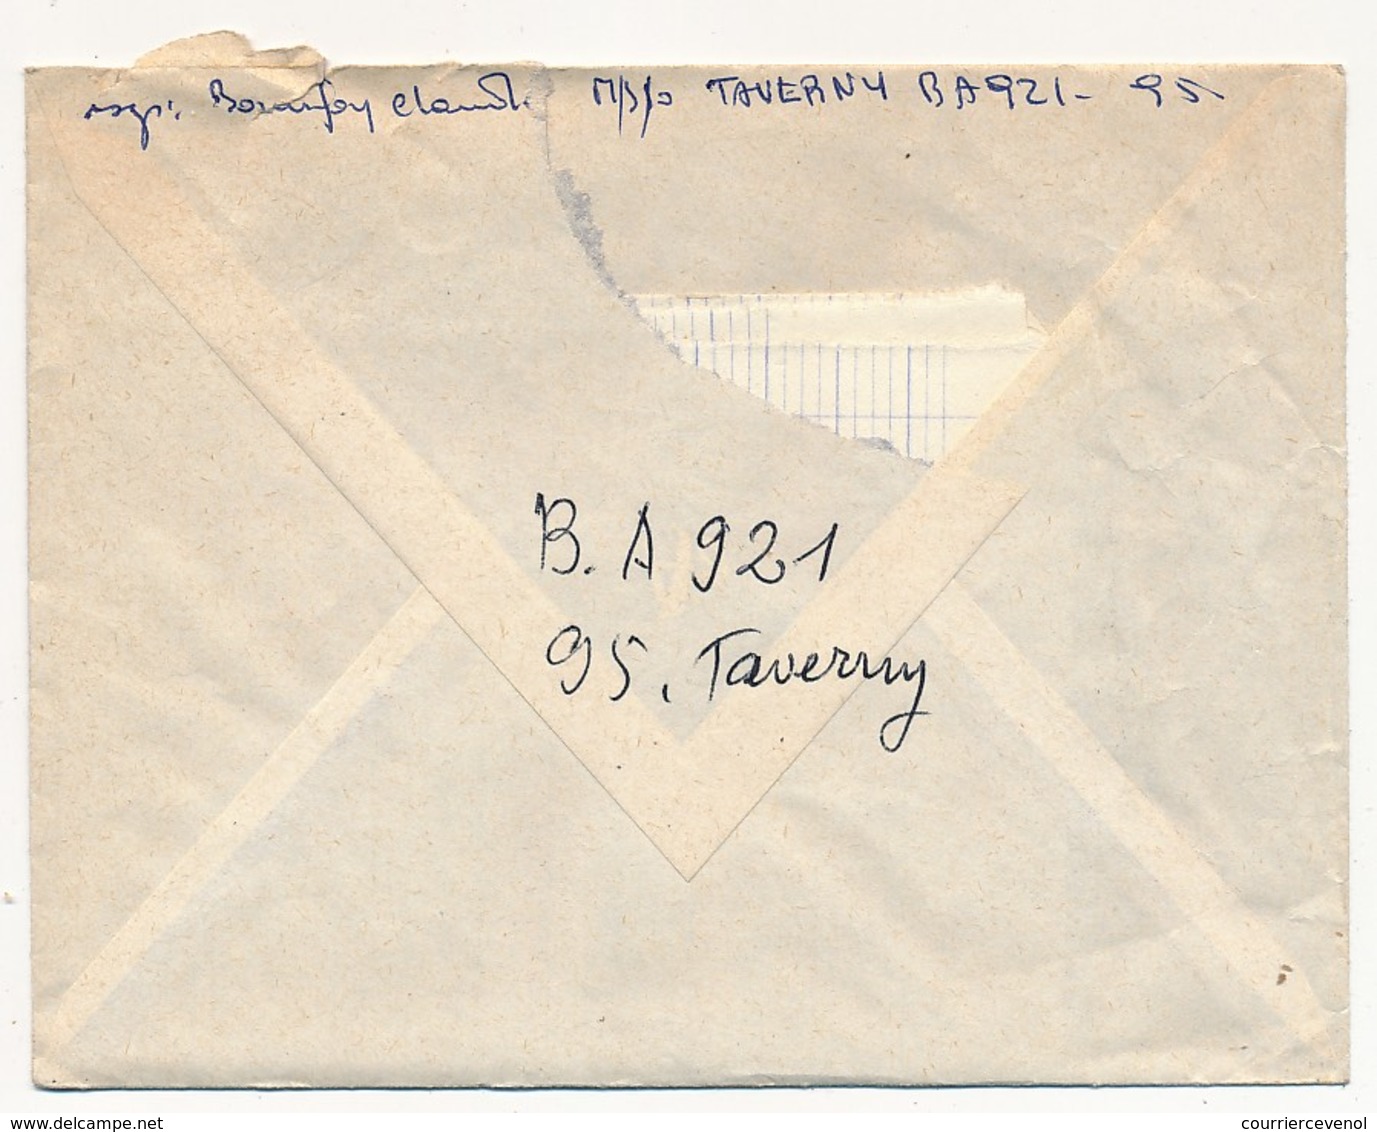 FM Drapeau Sur Enveloppe OMEC Taverny (Val D'Oise) / Base Aérienne 921 95 TAVERNY - Le Vaguemestre - Military Postage Stamps